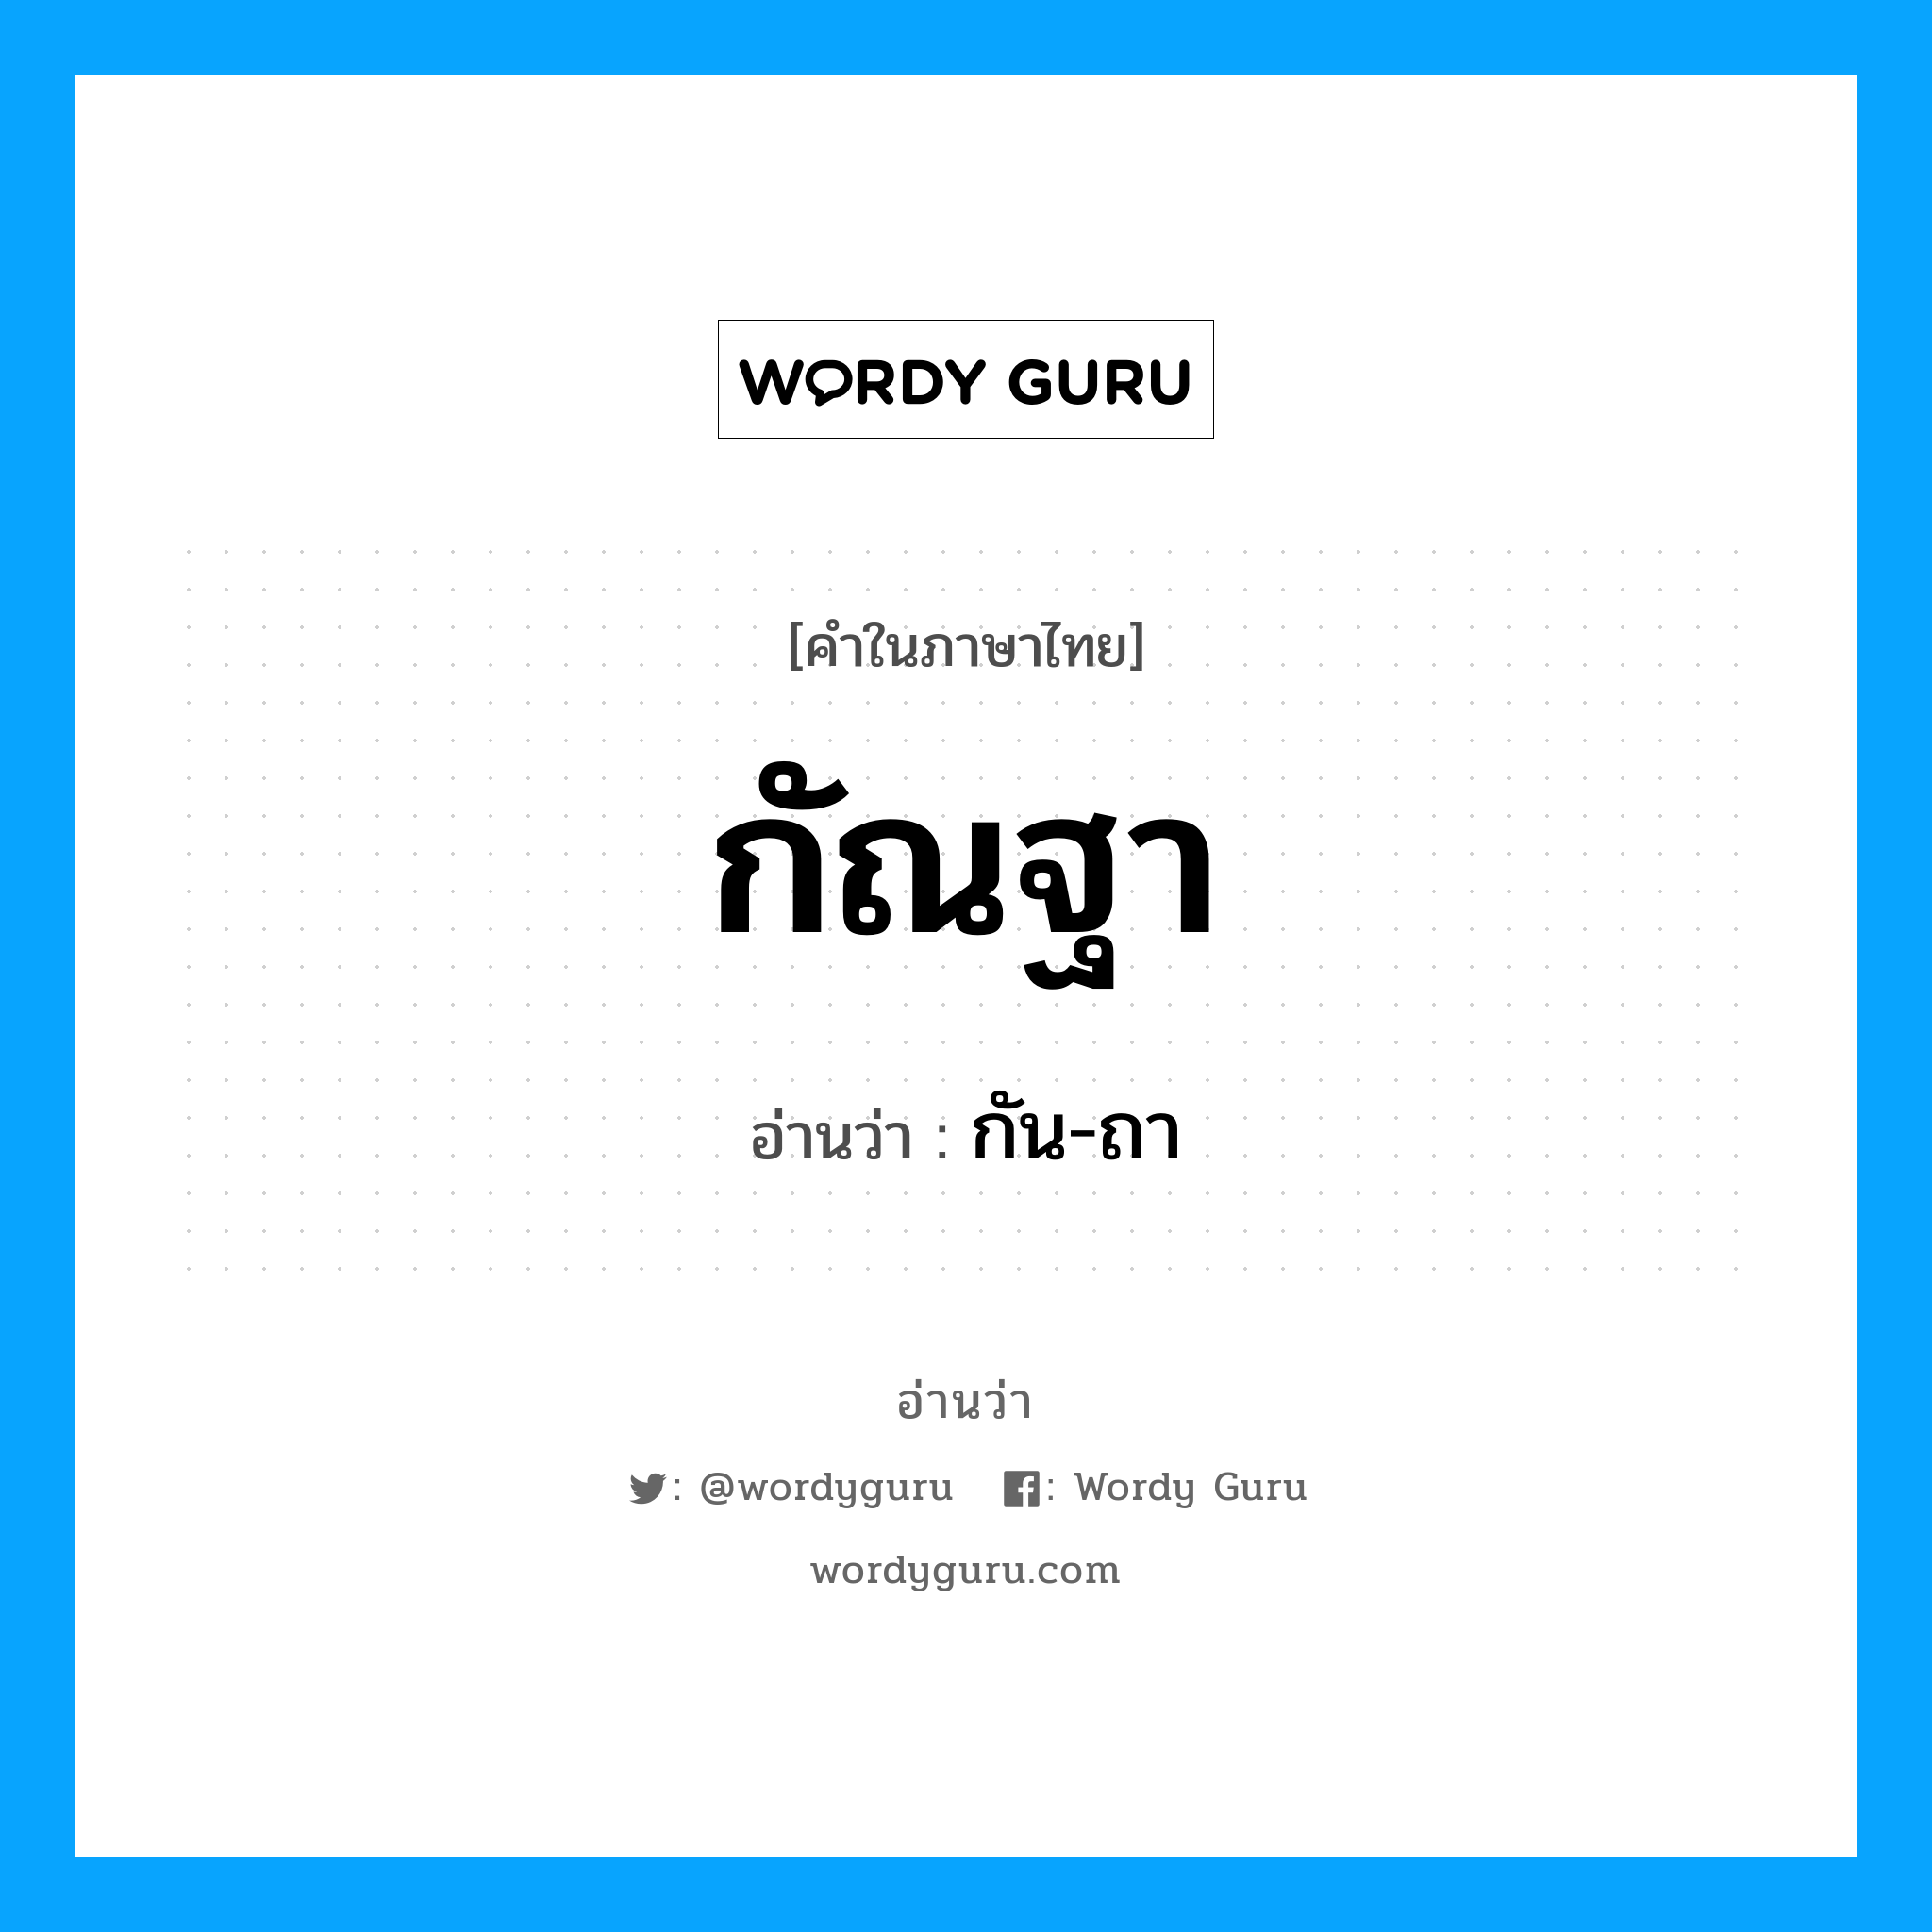 กัน-ถา เป็นคำอ่านของคำไหน?, คำในภาษาไทย กัน-ถา อ่านว่า กัณฐา